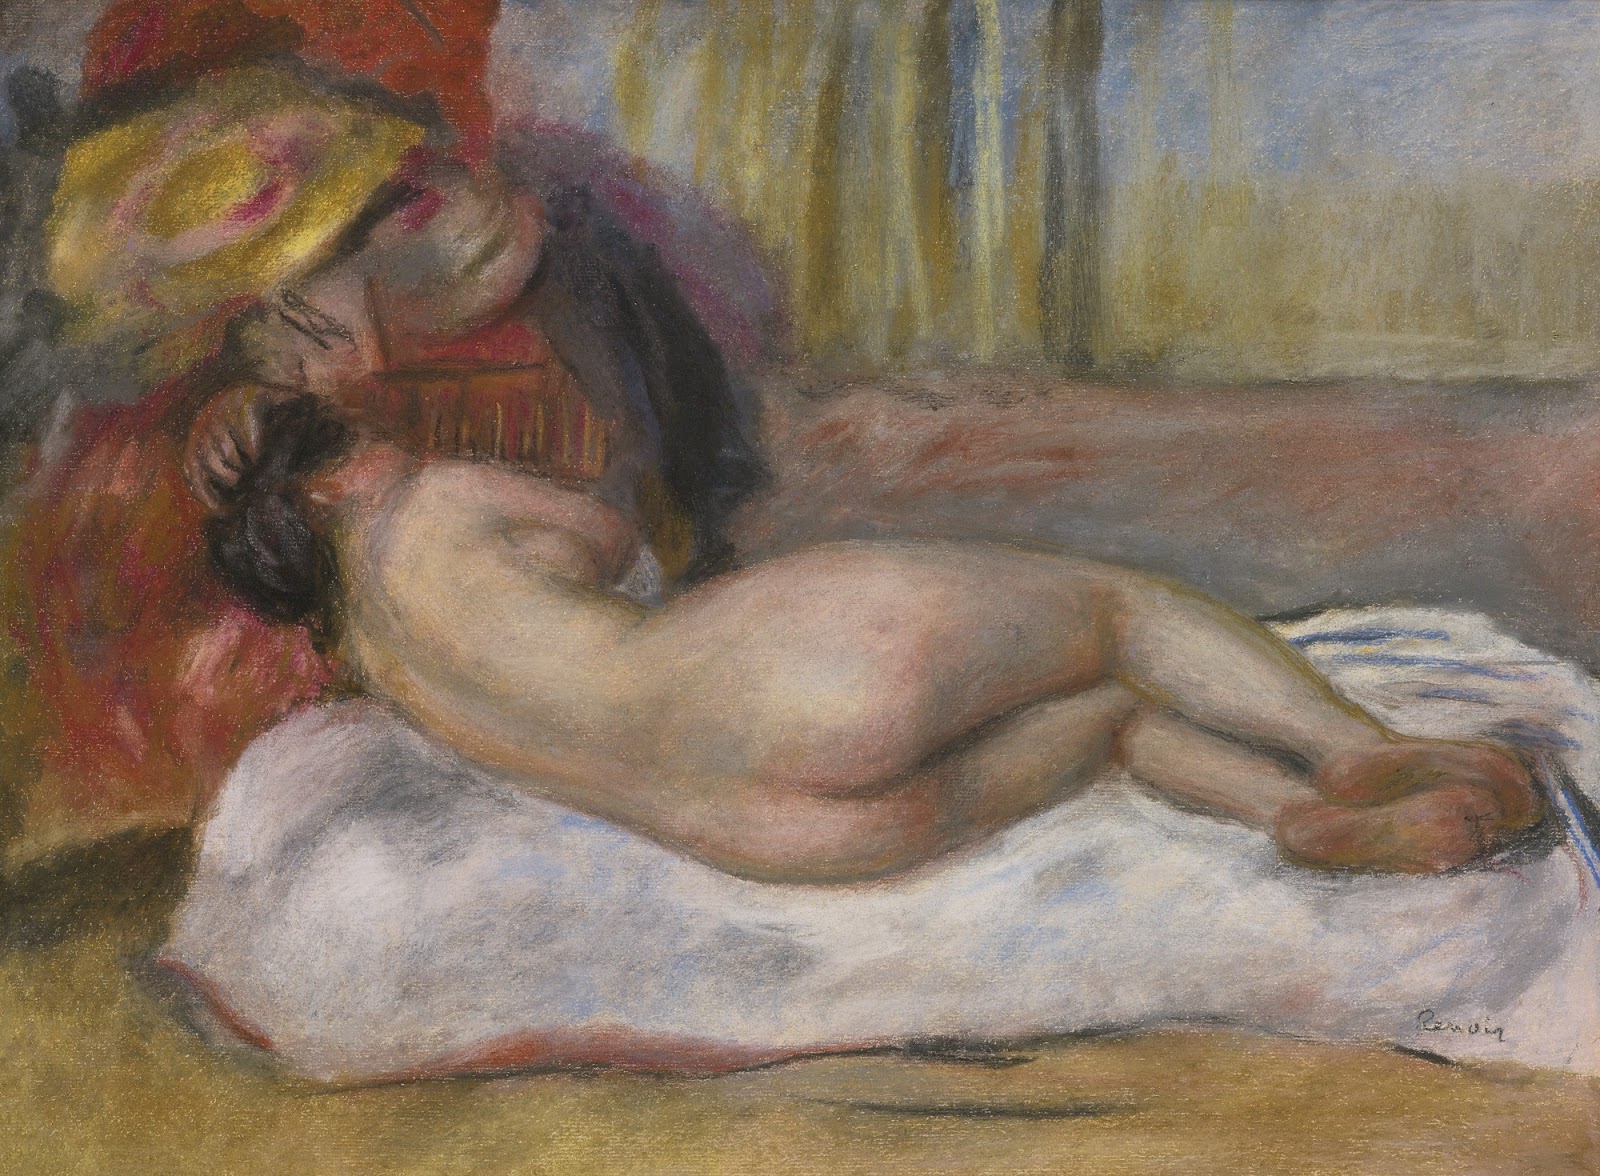 Pierre+Auguste+Renoir-1841-1-19 (546).jpg